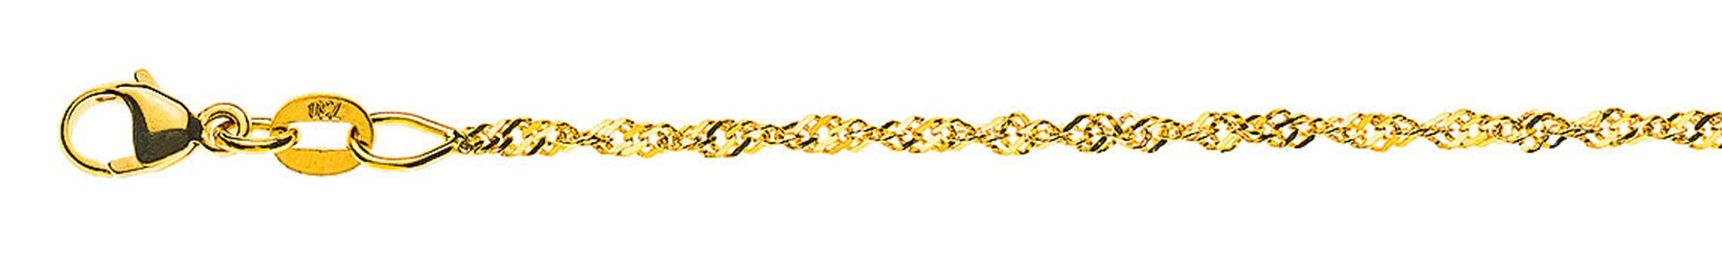 AURONOS Prestige Necklace Yellow Gold 18K Singapore Chain 60cm 1.5mm